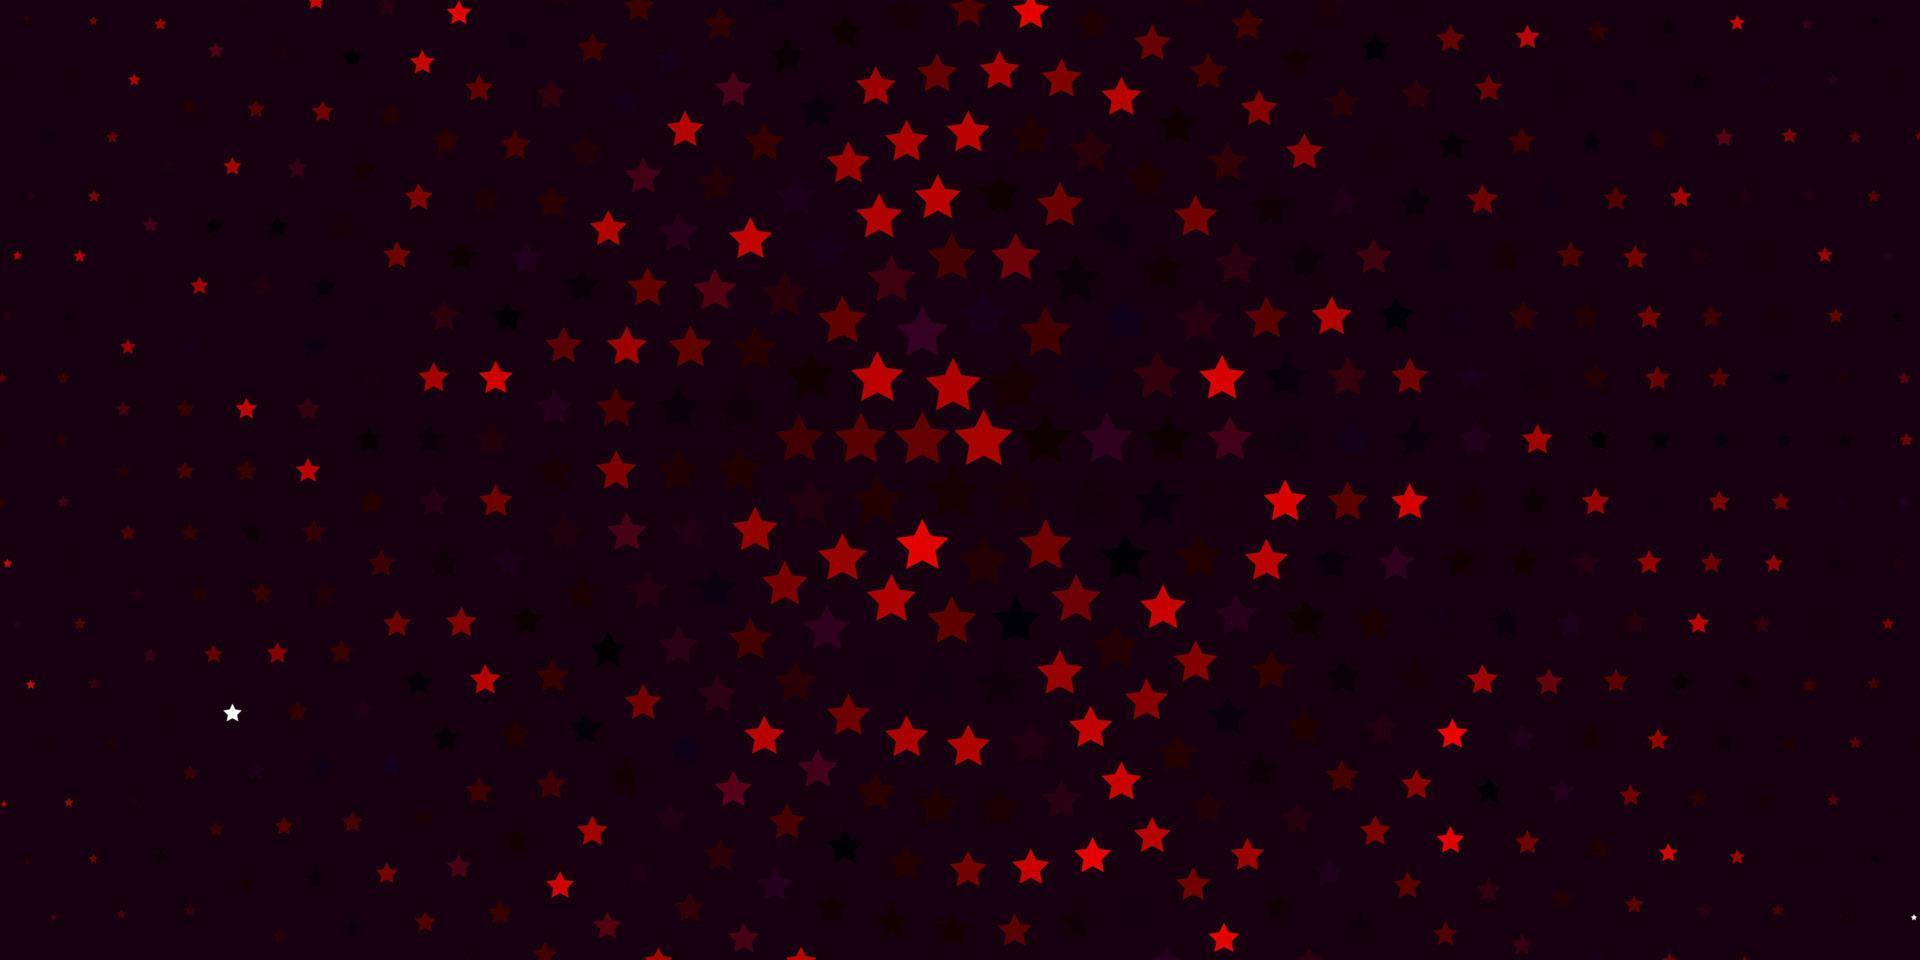 modelo de vetor azul e vermelho claro com estrelas de néon.